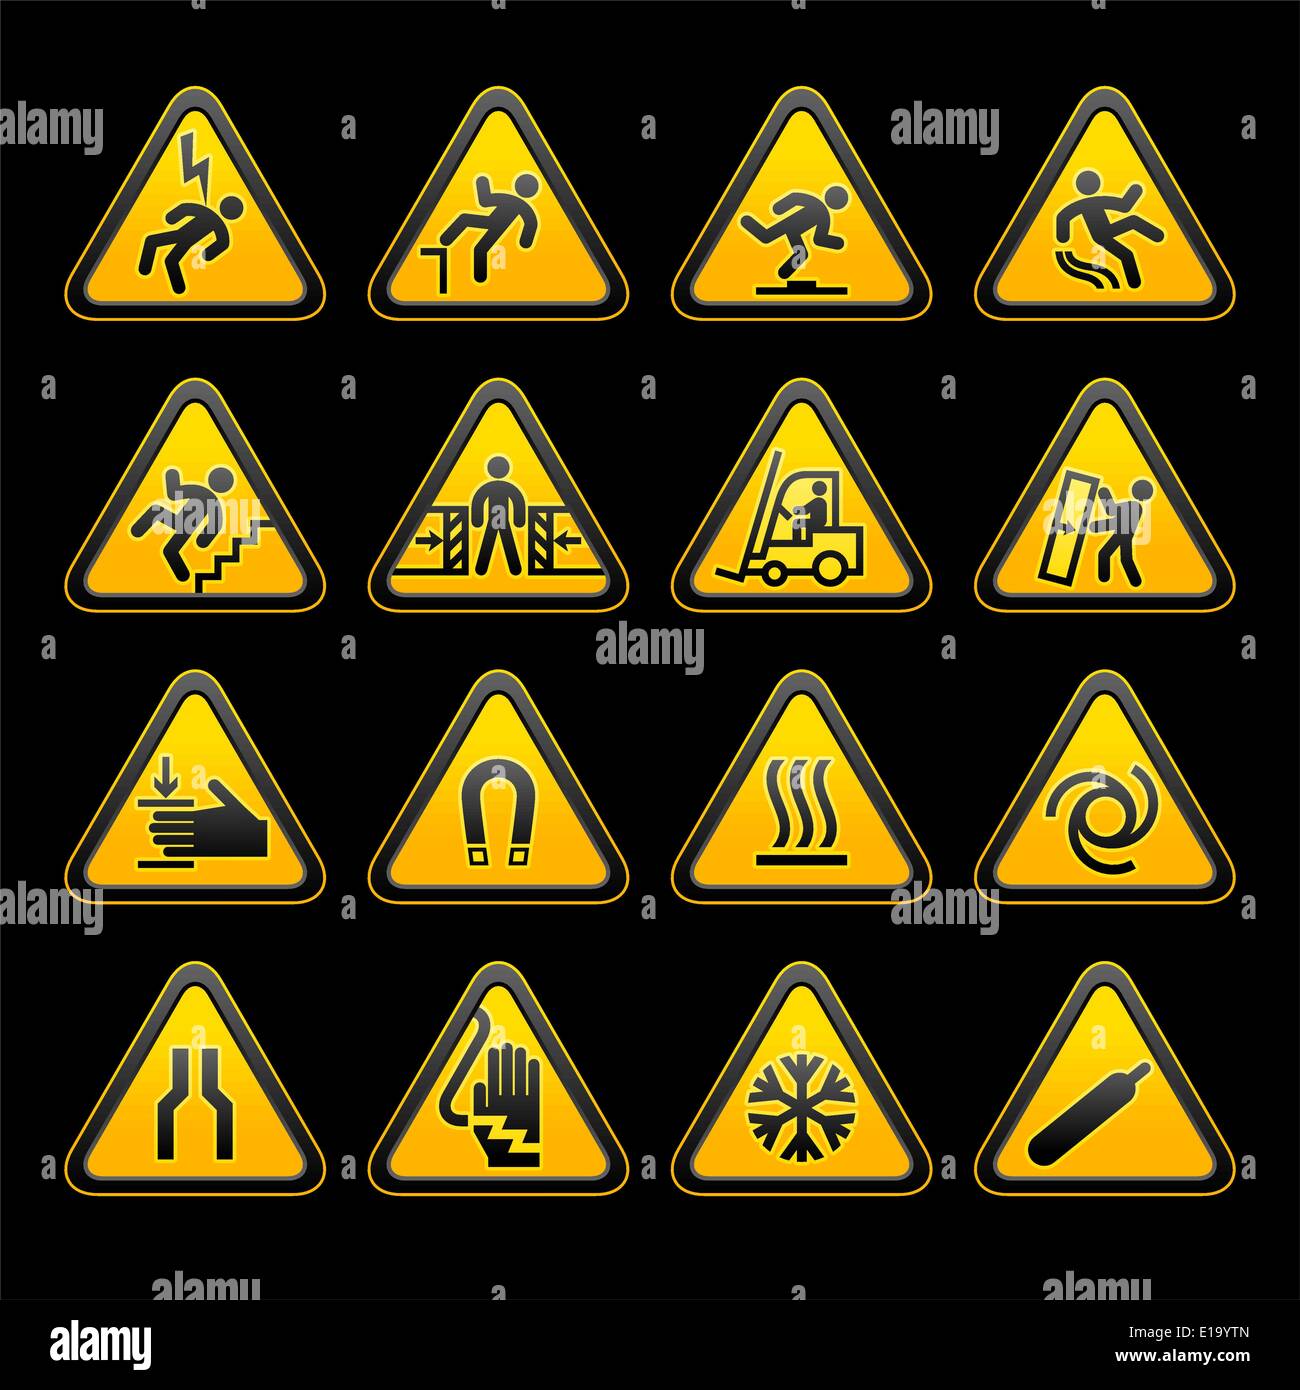 Símbolos De Advertencia Triangular Simple Conjunto De Señales De